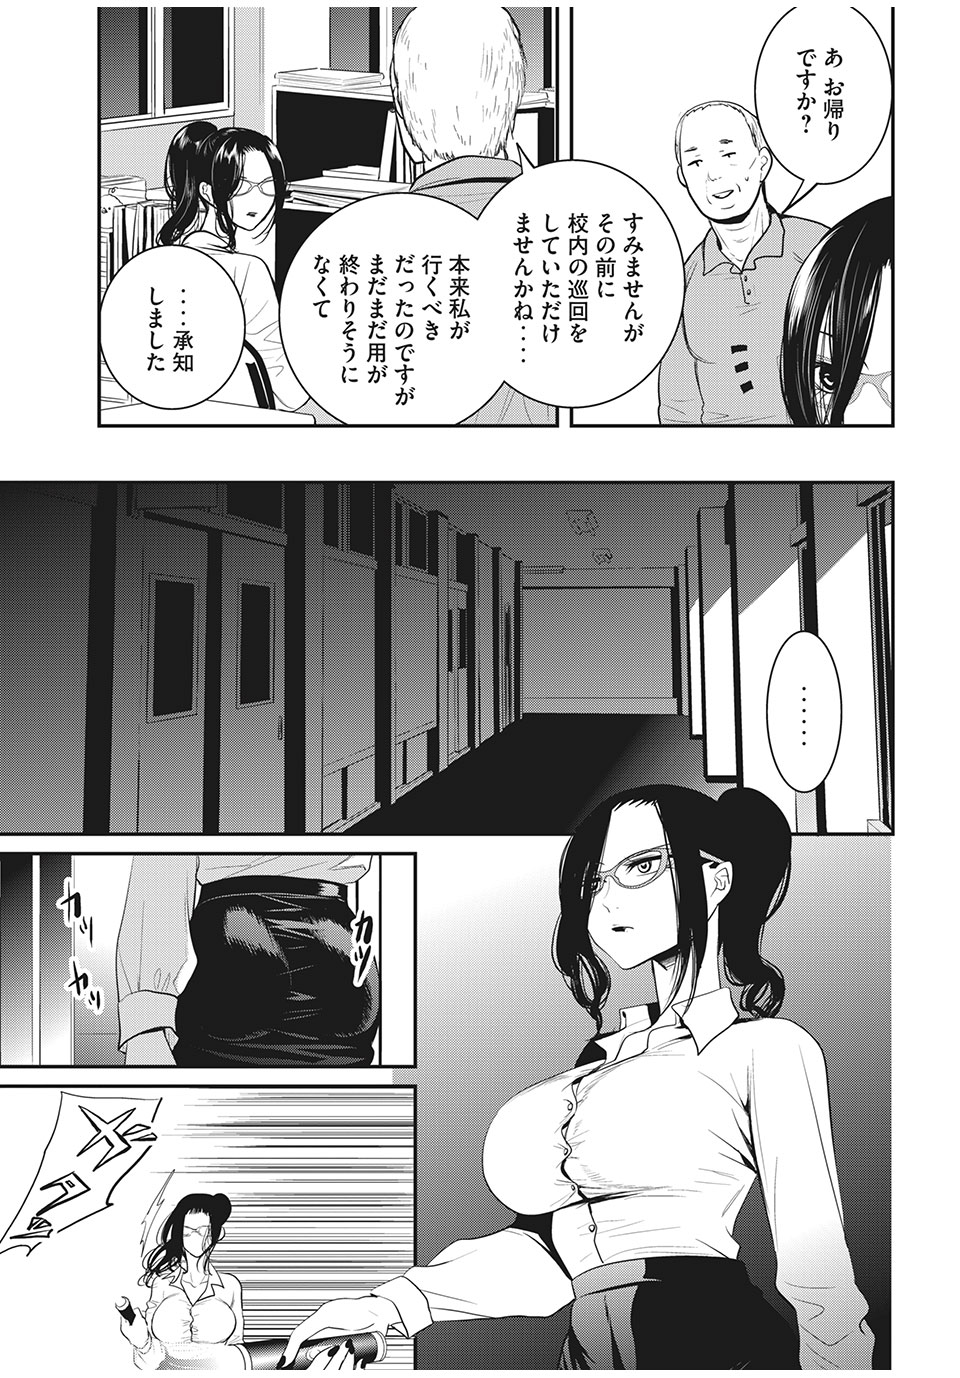 Eigo ×× Sensei - Chapter 12 - Page 3